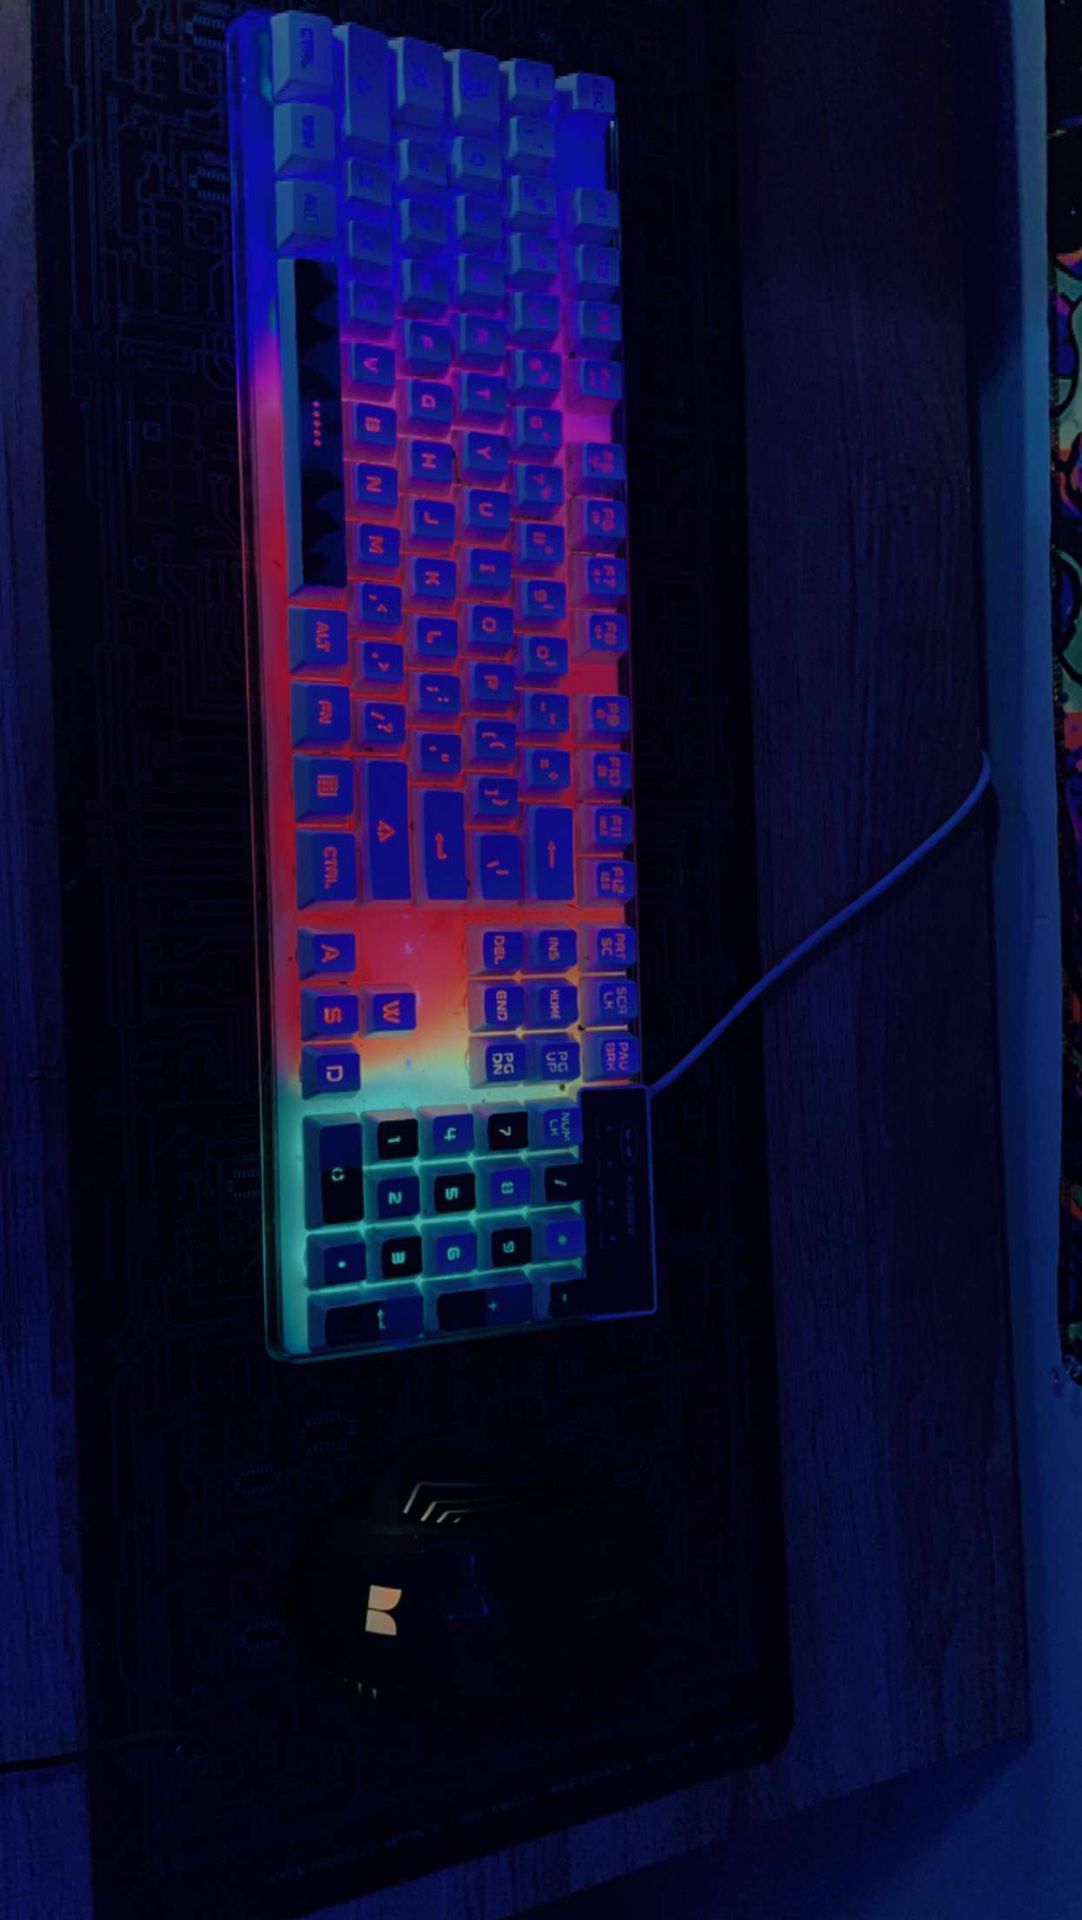 Led Gaming Keyboard 